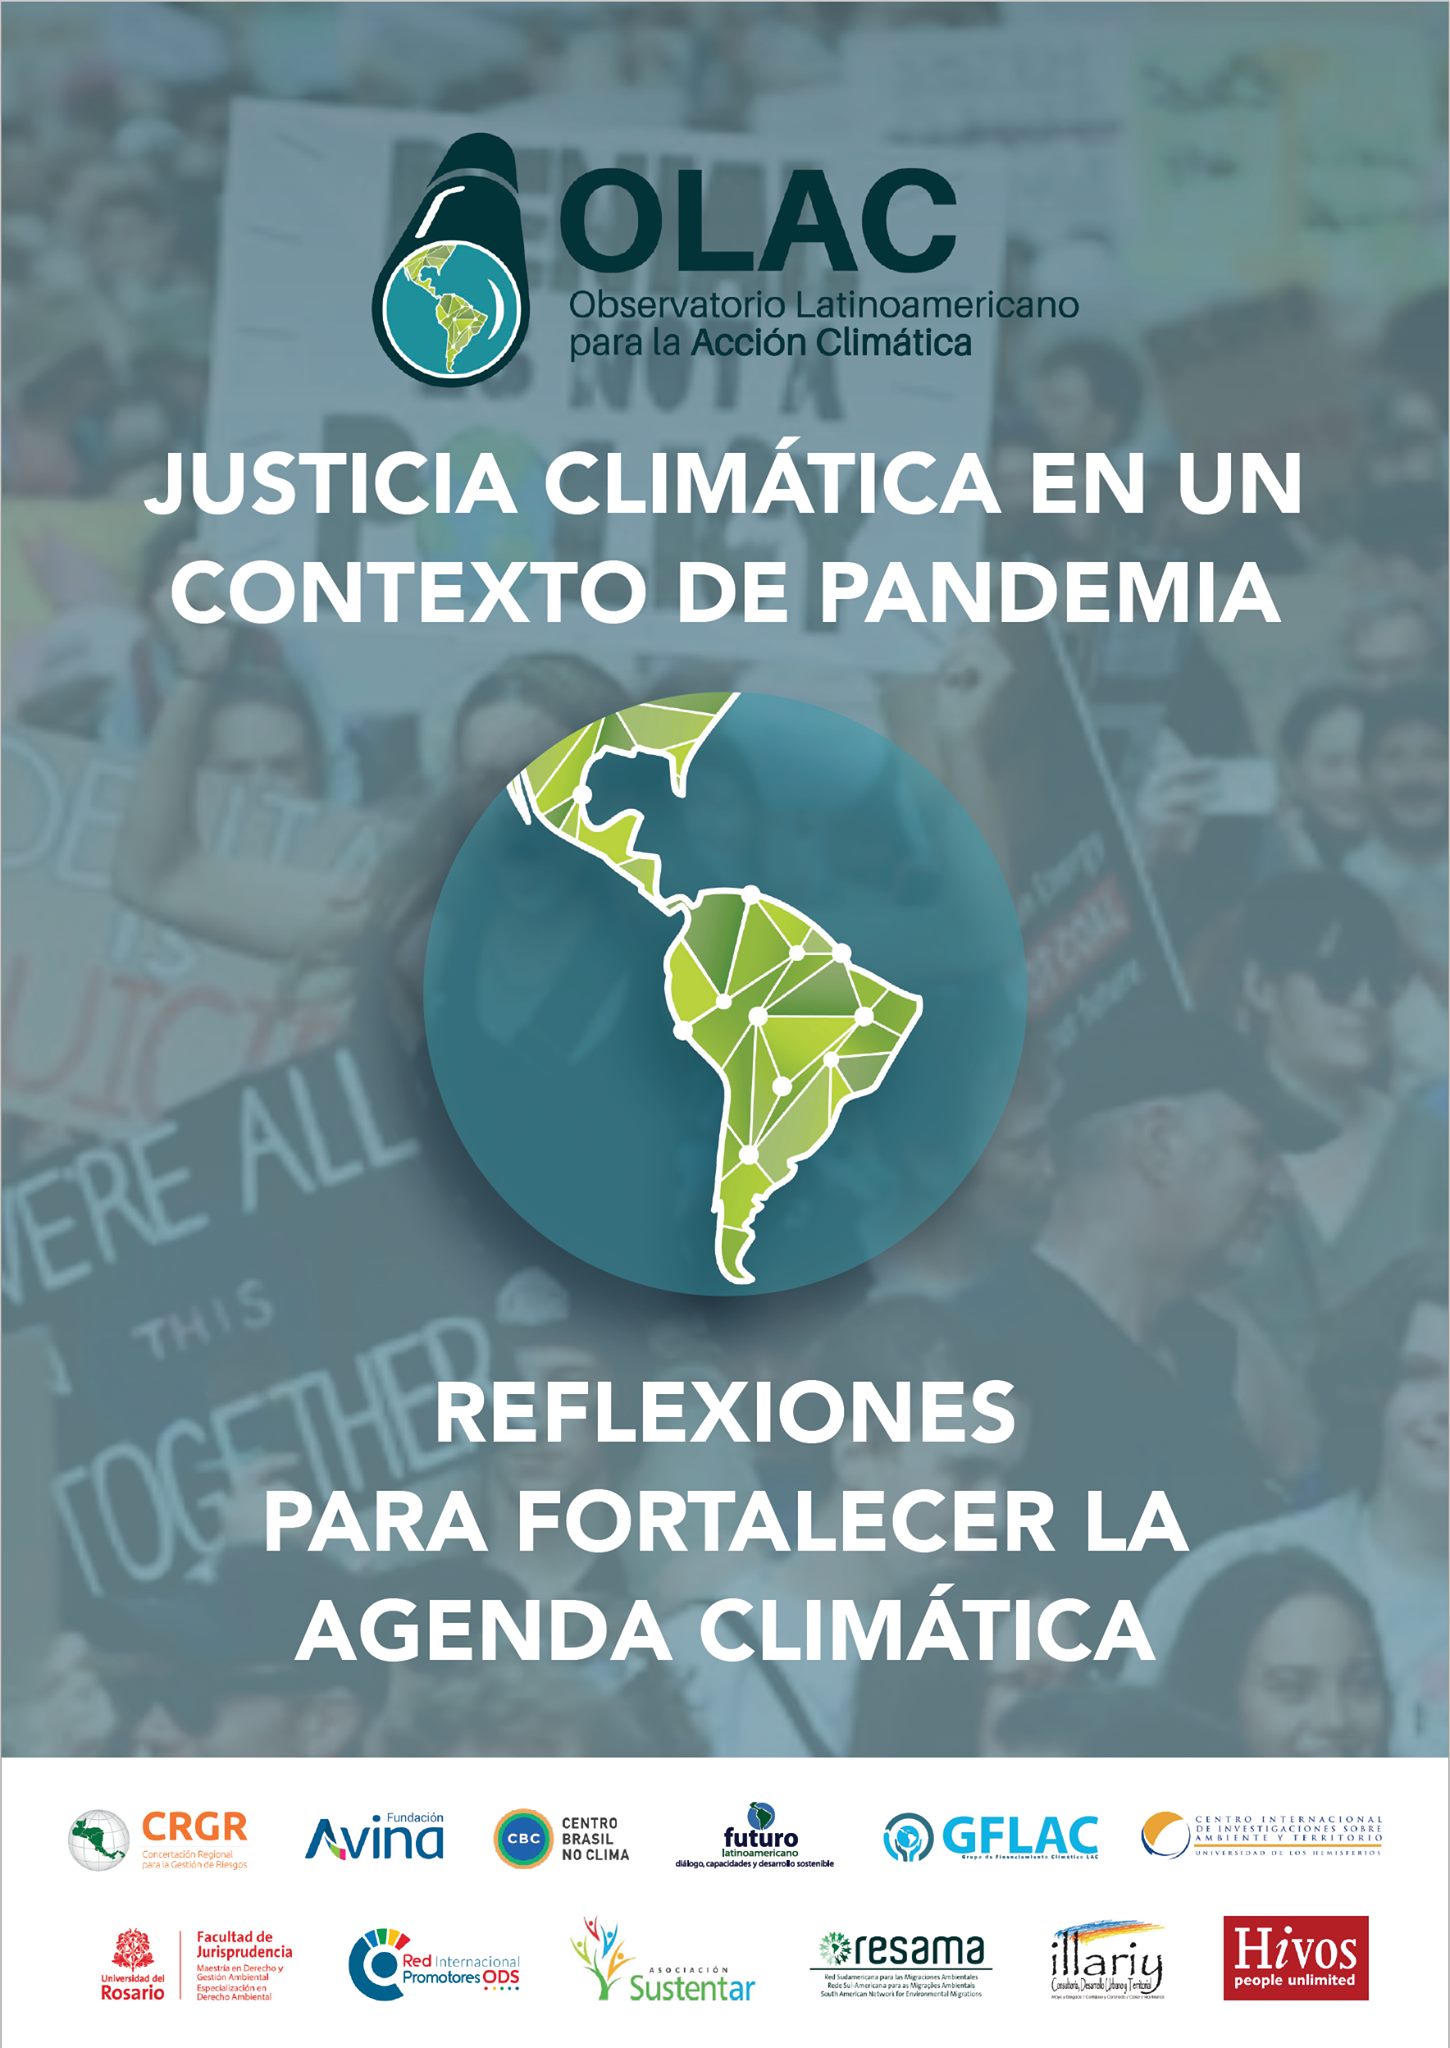 usticia Climática en un Contexto de Pandemia: reflexiones para fortalecer la Agenda Climática